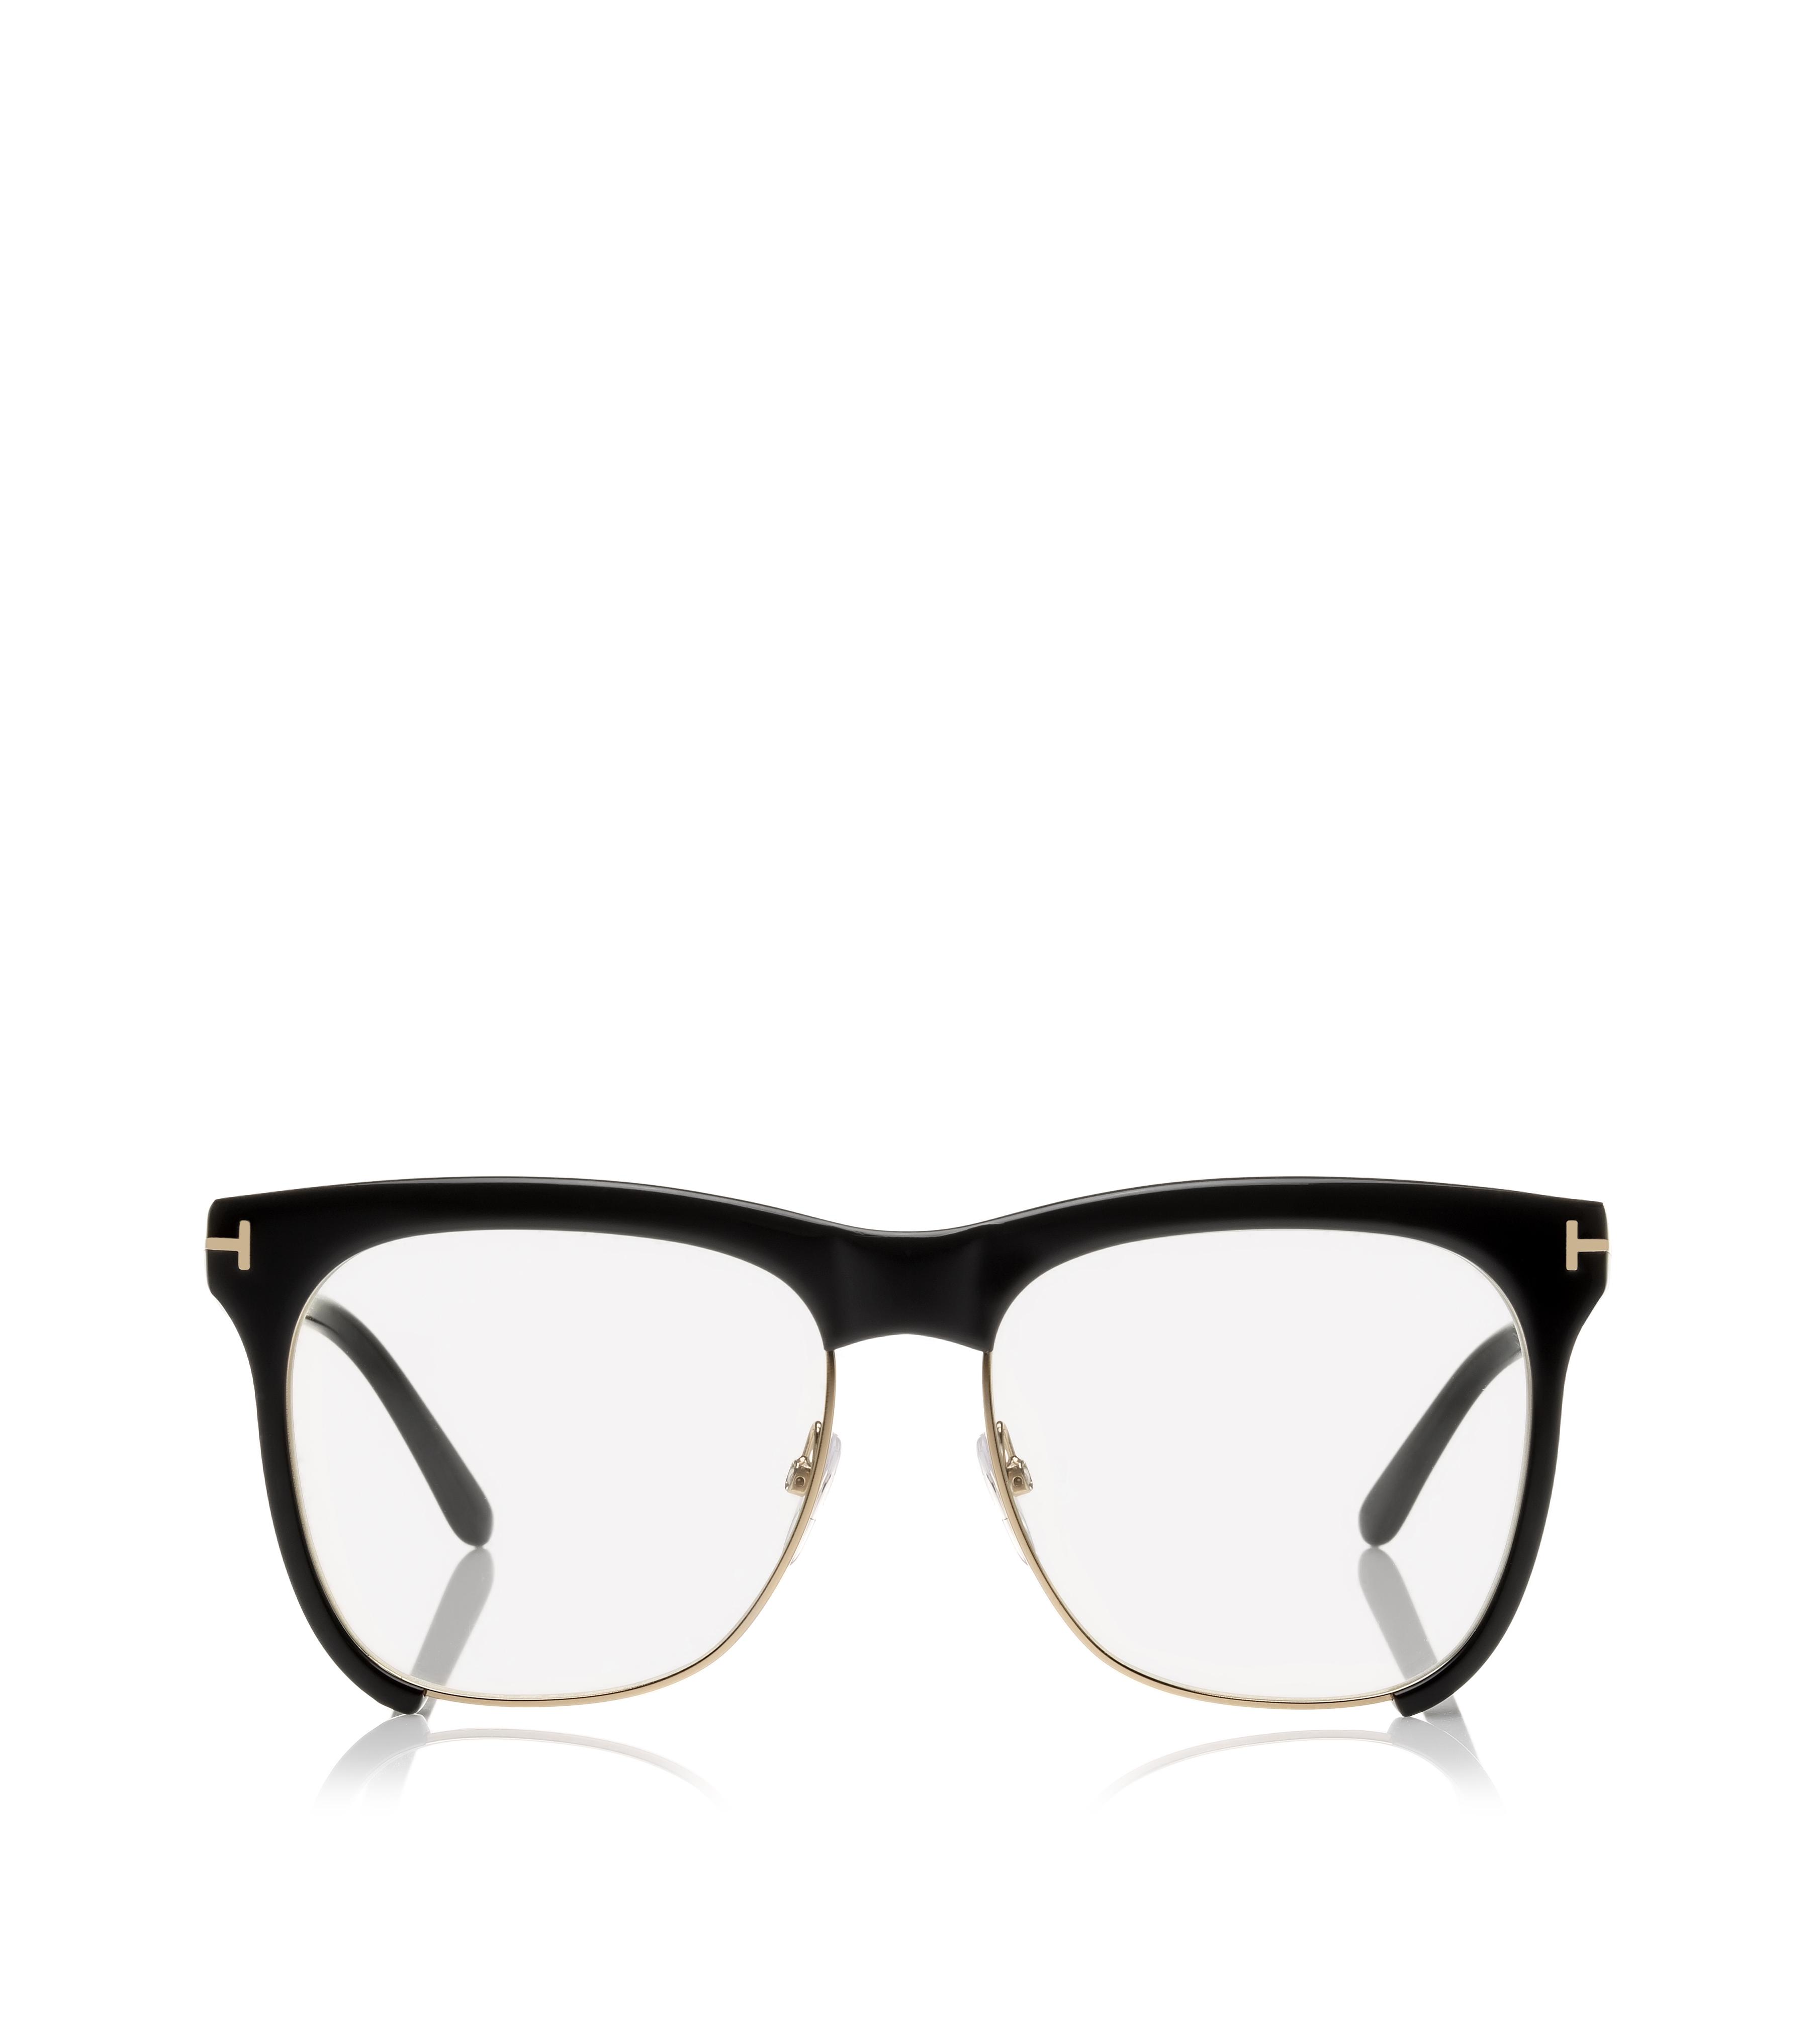 Optical - Designer Optical & Eyeglass Frames for Women | TOM FORD ...